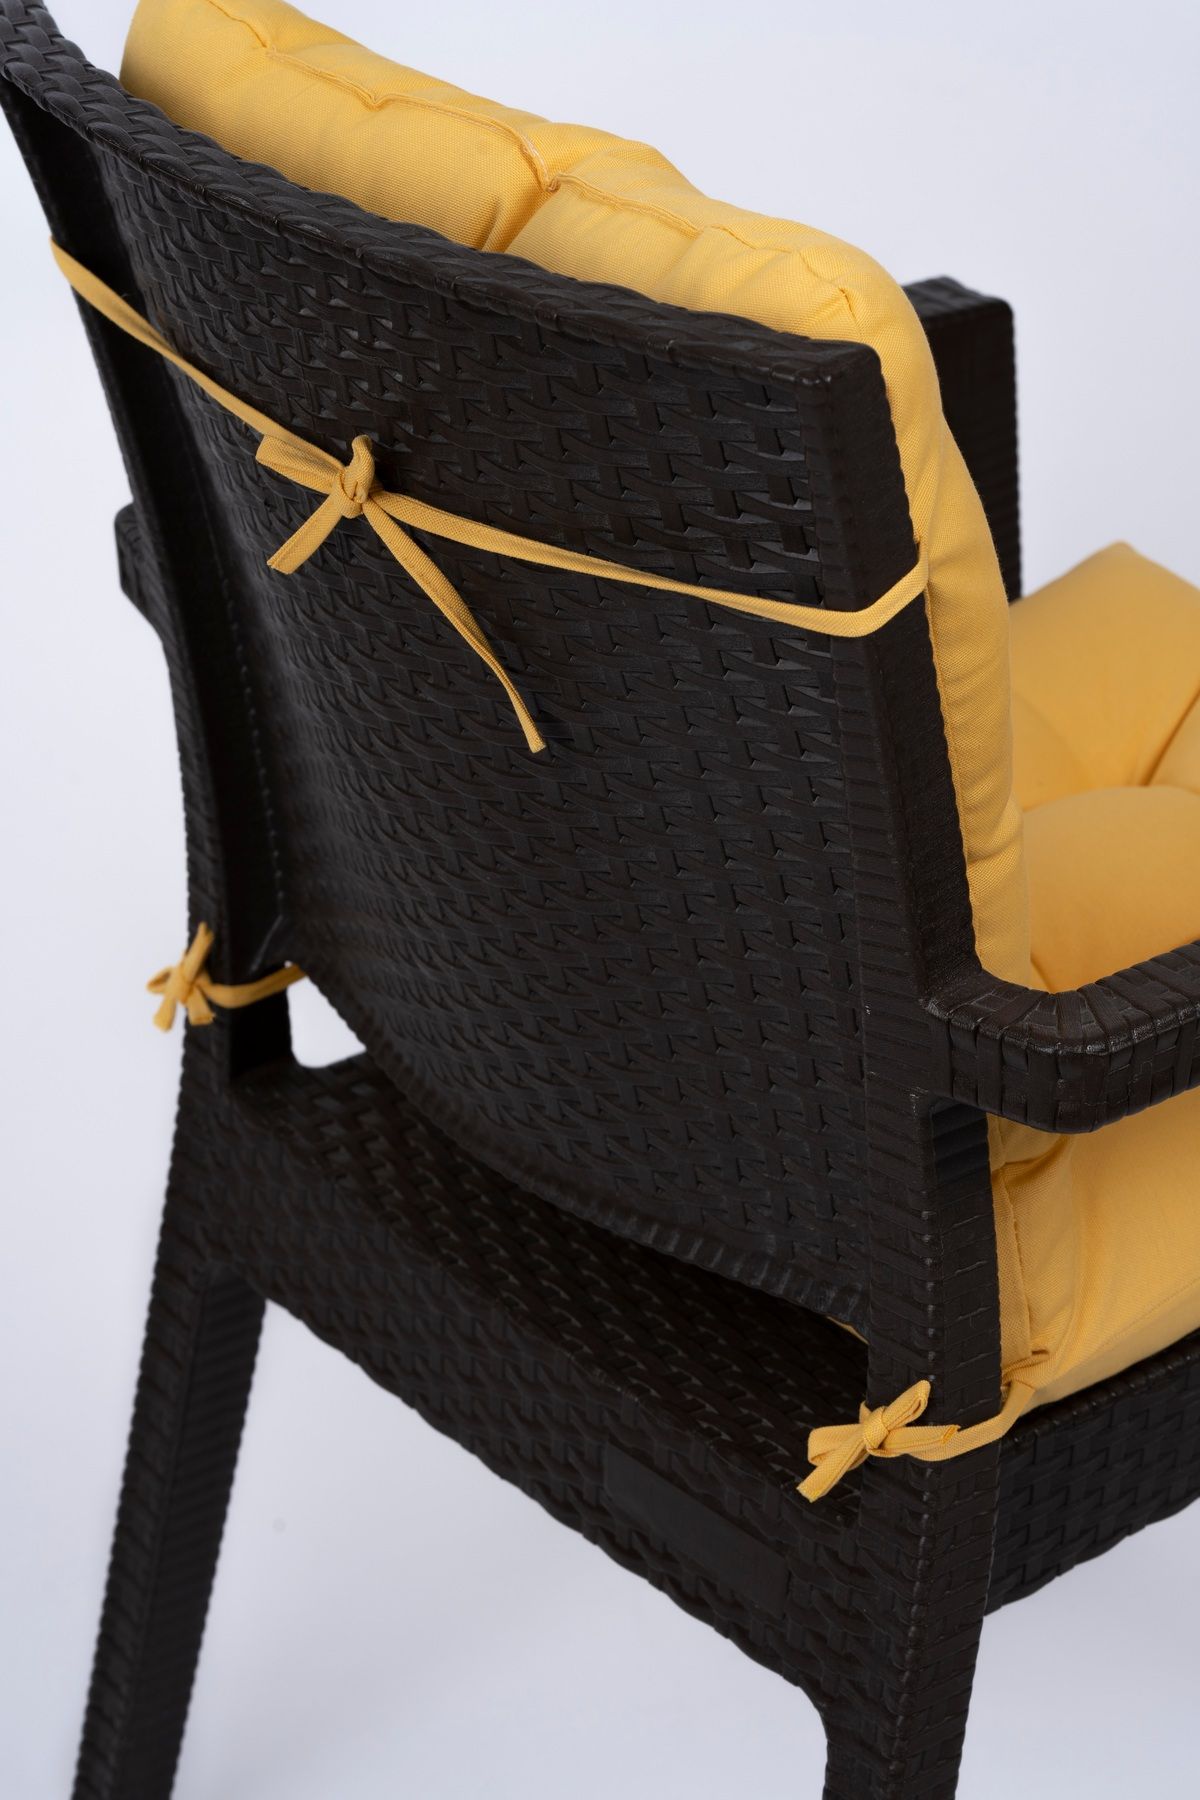 ALTINPAMUK Neva Pofidik Sarı Arkalıklı Sandalye Minderi Özel Dikişli Bağcıklı 44x88 Cm